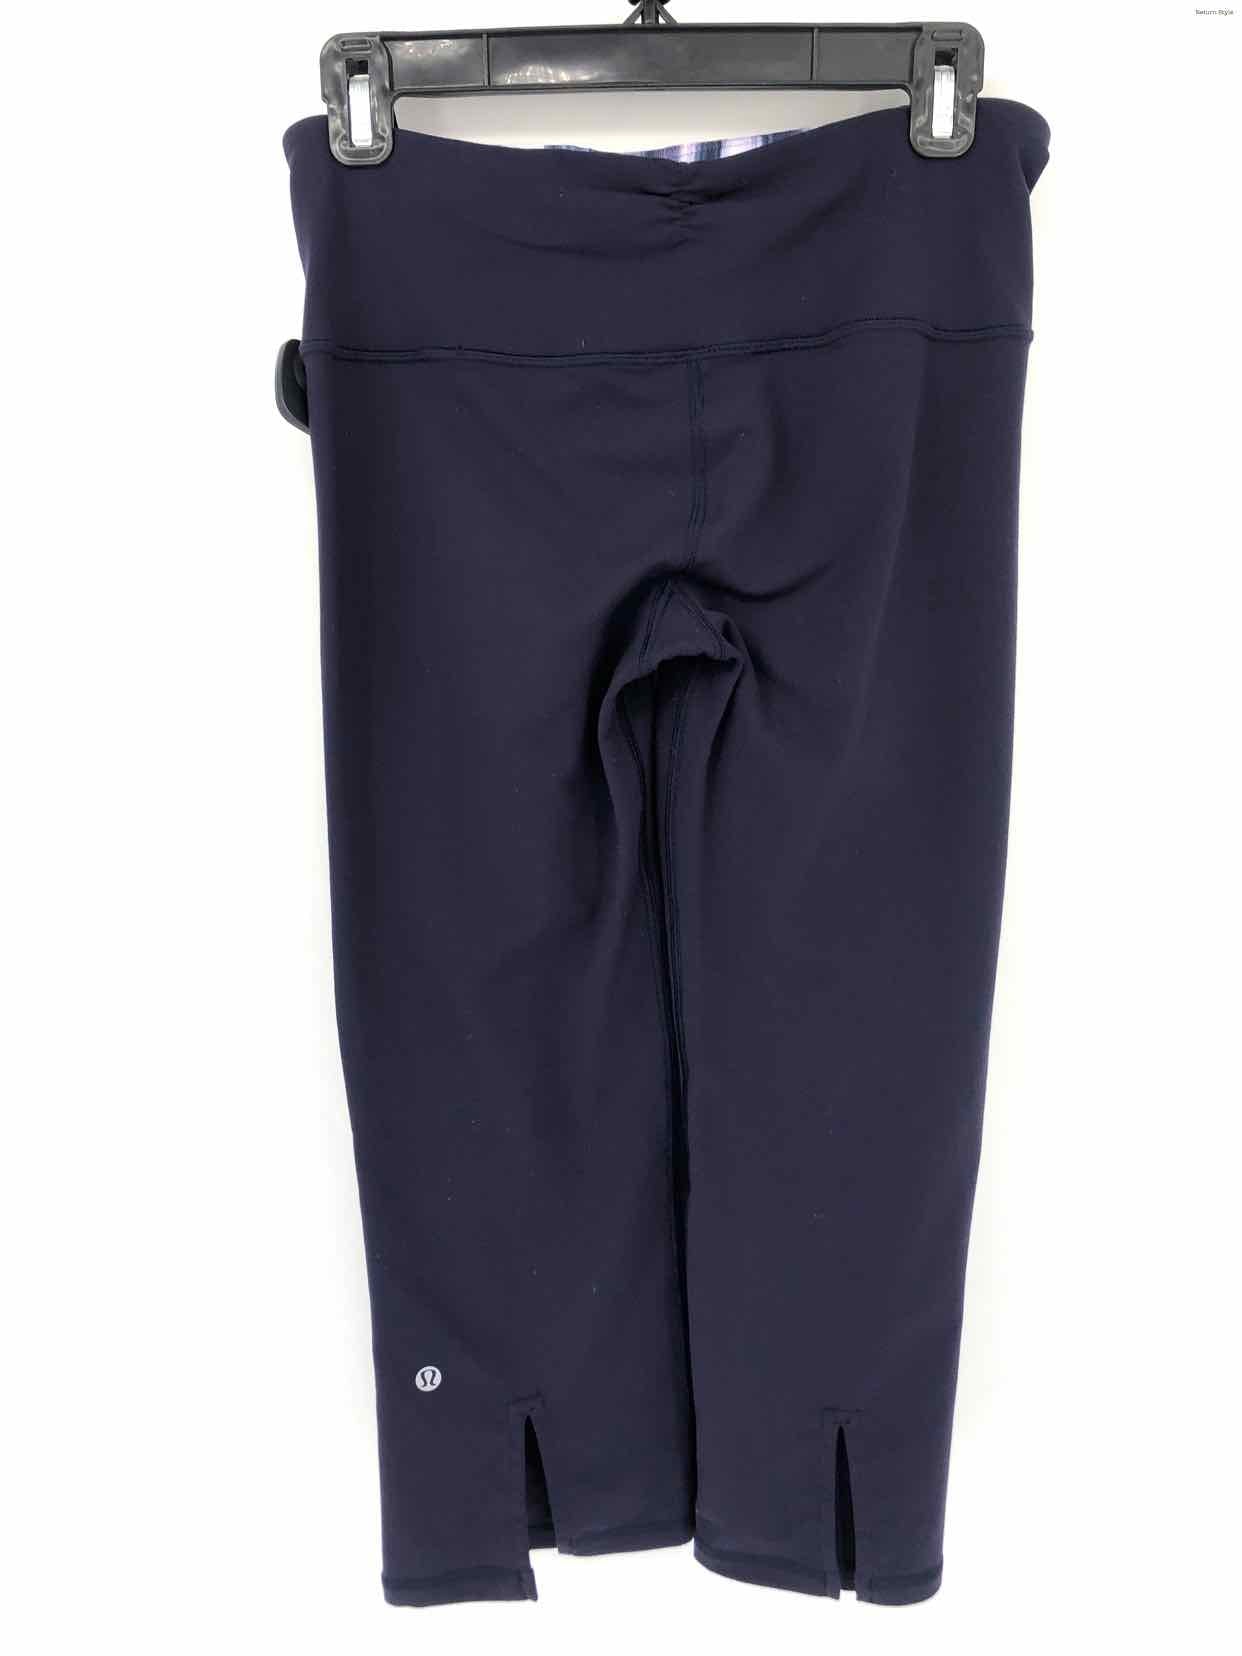 Lululemon Capri Activewear Pants (Size: 6) - Gem